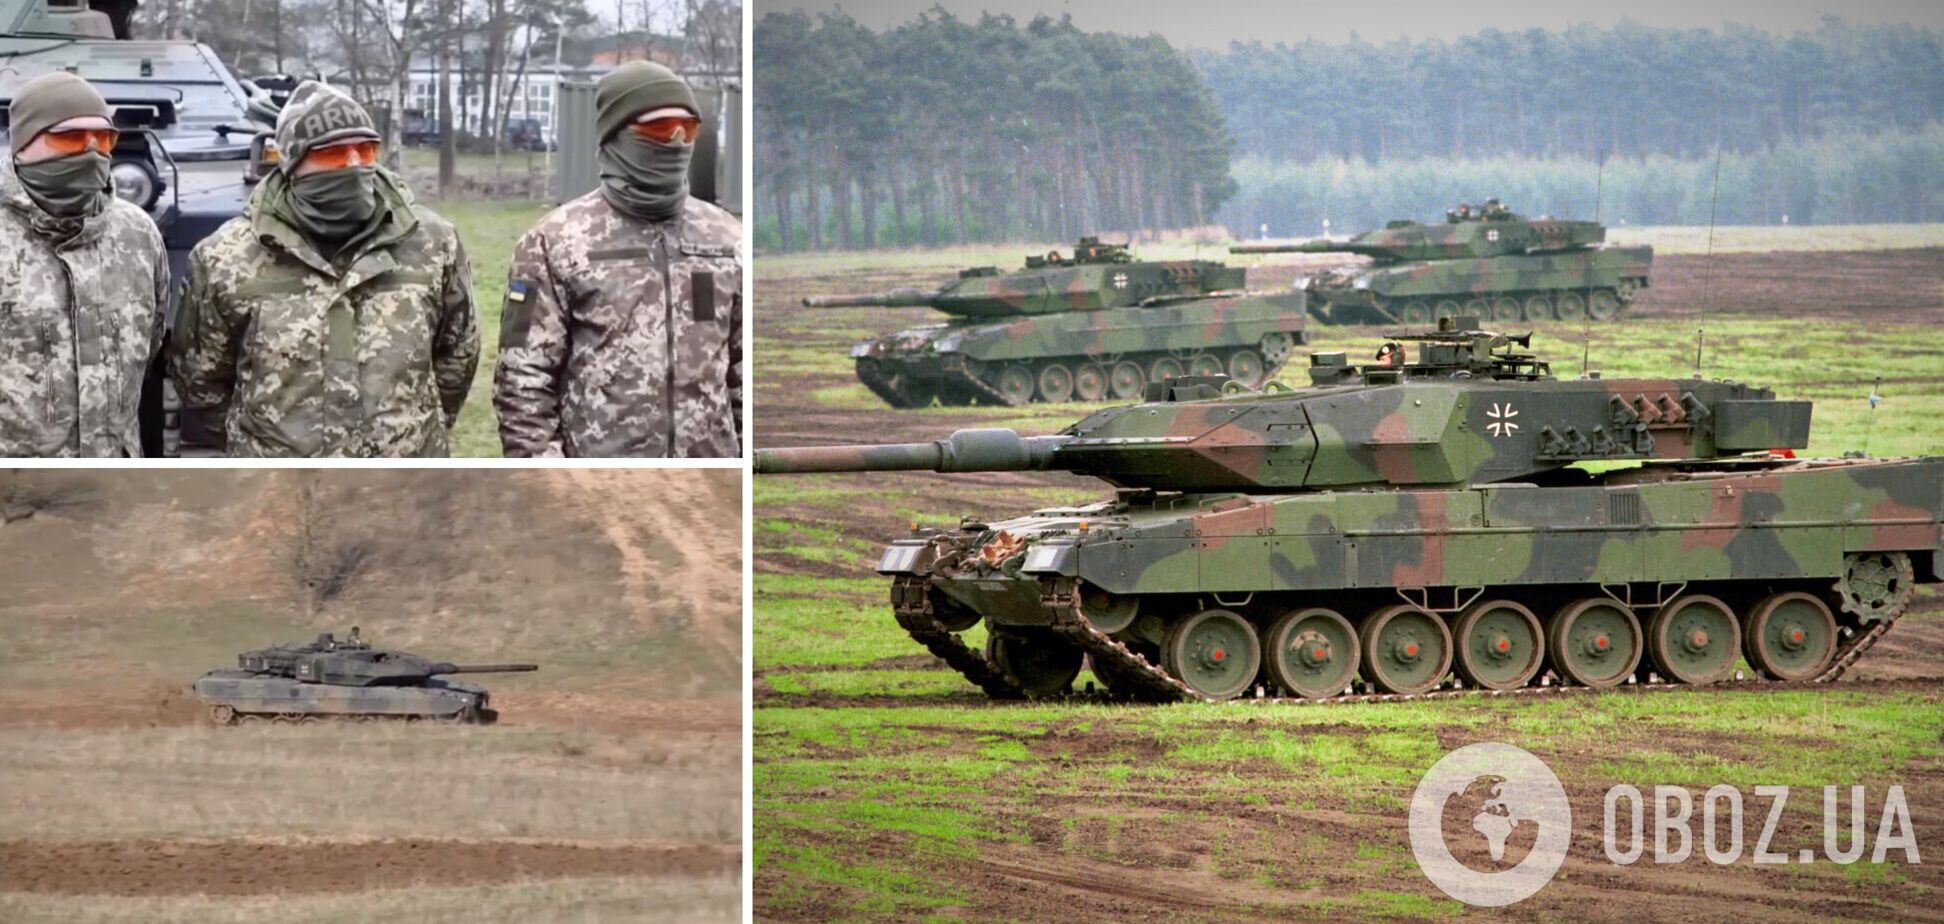 12 часов в день, 6 дней в неделю: France24 показал кадры боевой подготовки украинских танкистов на Leopard 2. Видео